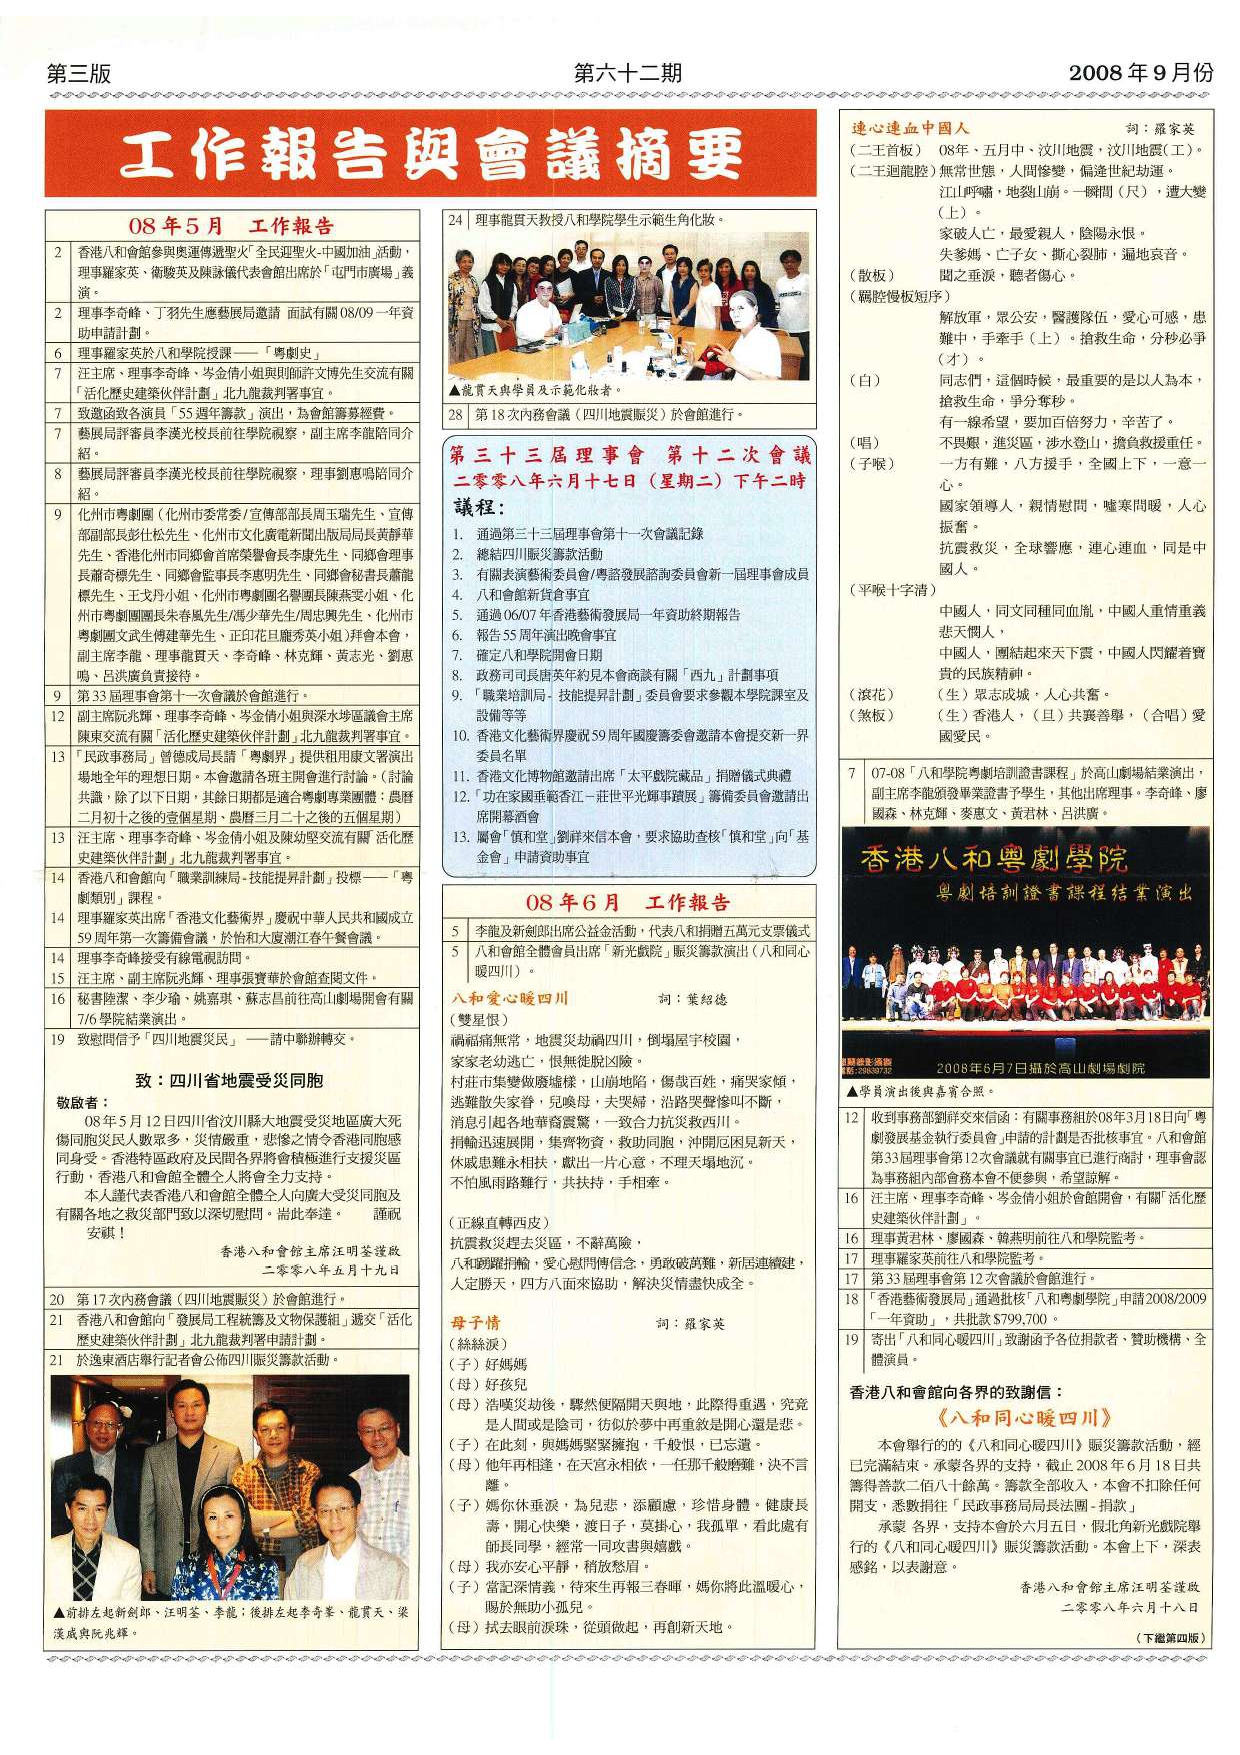 香港八和會館辦公室報告（2008年5月至6月）及第三十三屆理事會第十二次會議議程